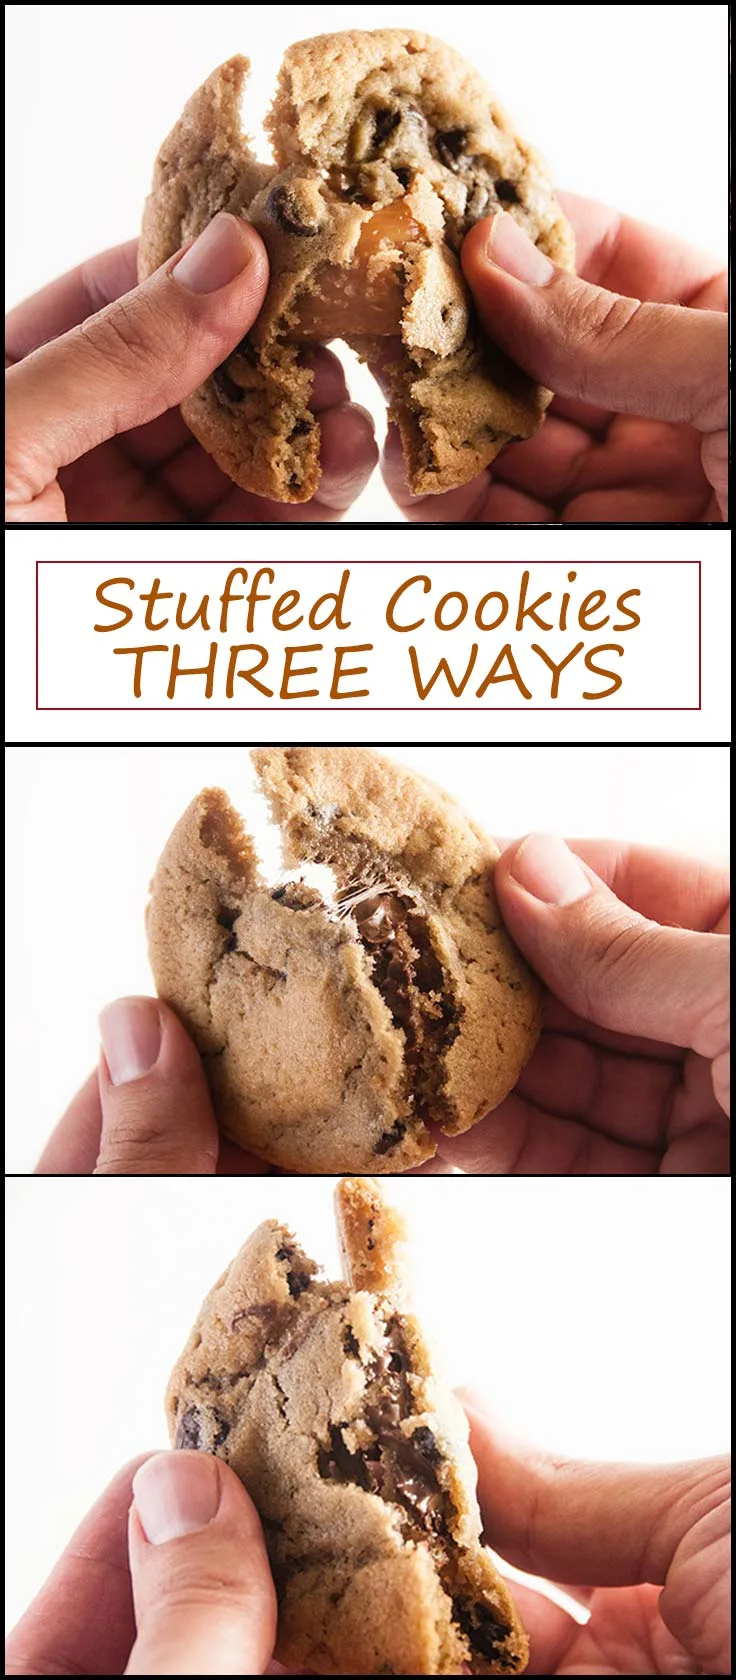 Stuffed Cookies Three Ways from www.seasonedsprinkles.com